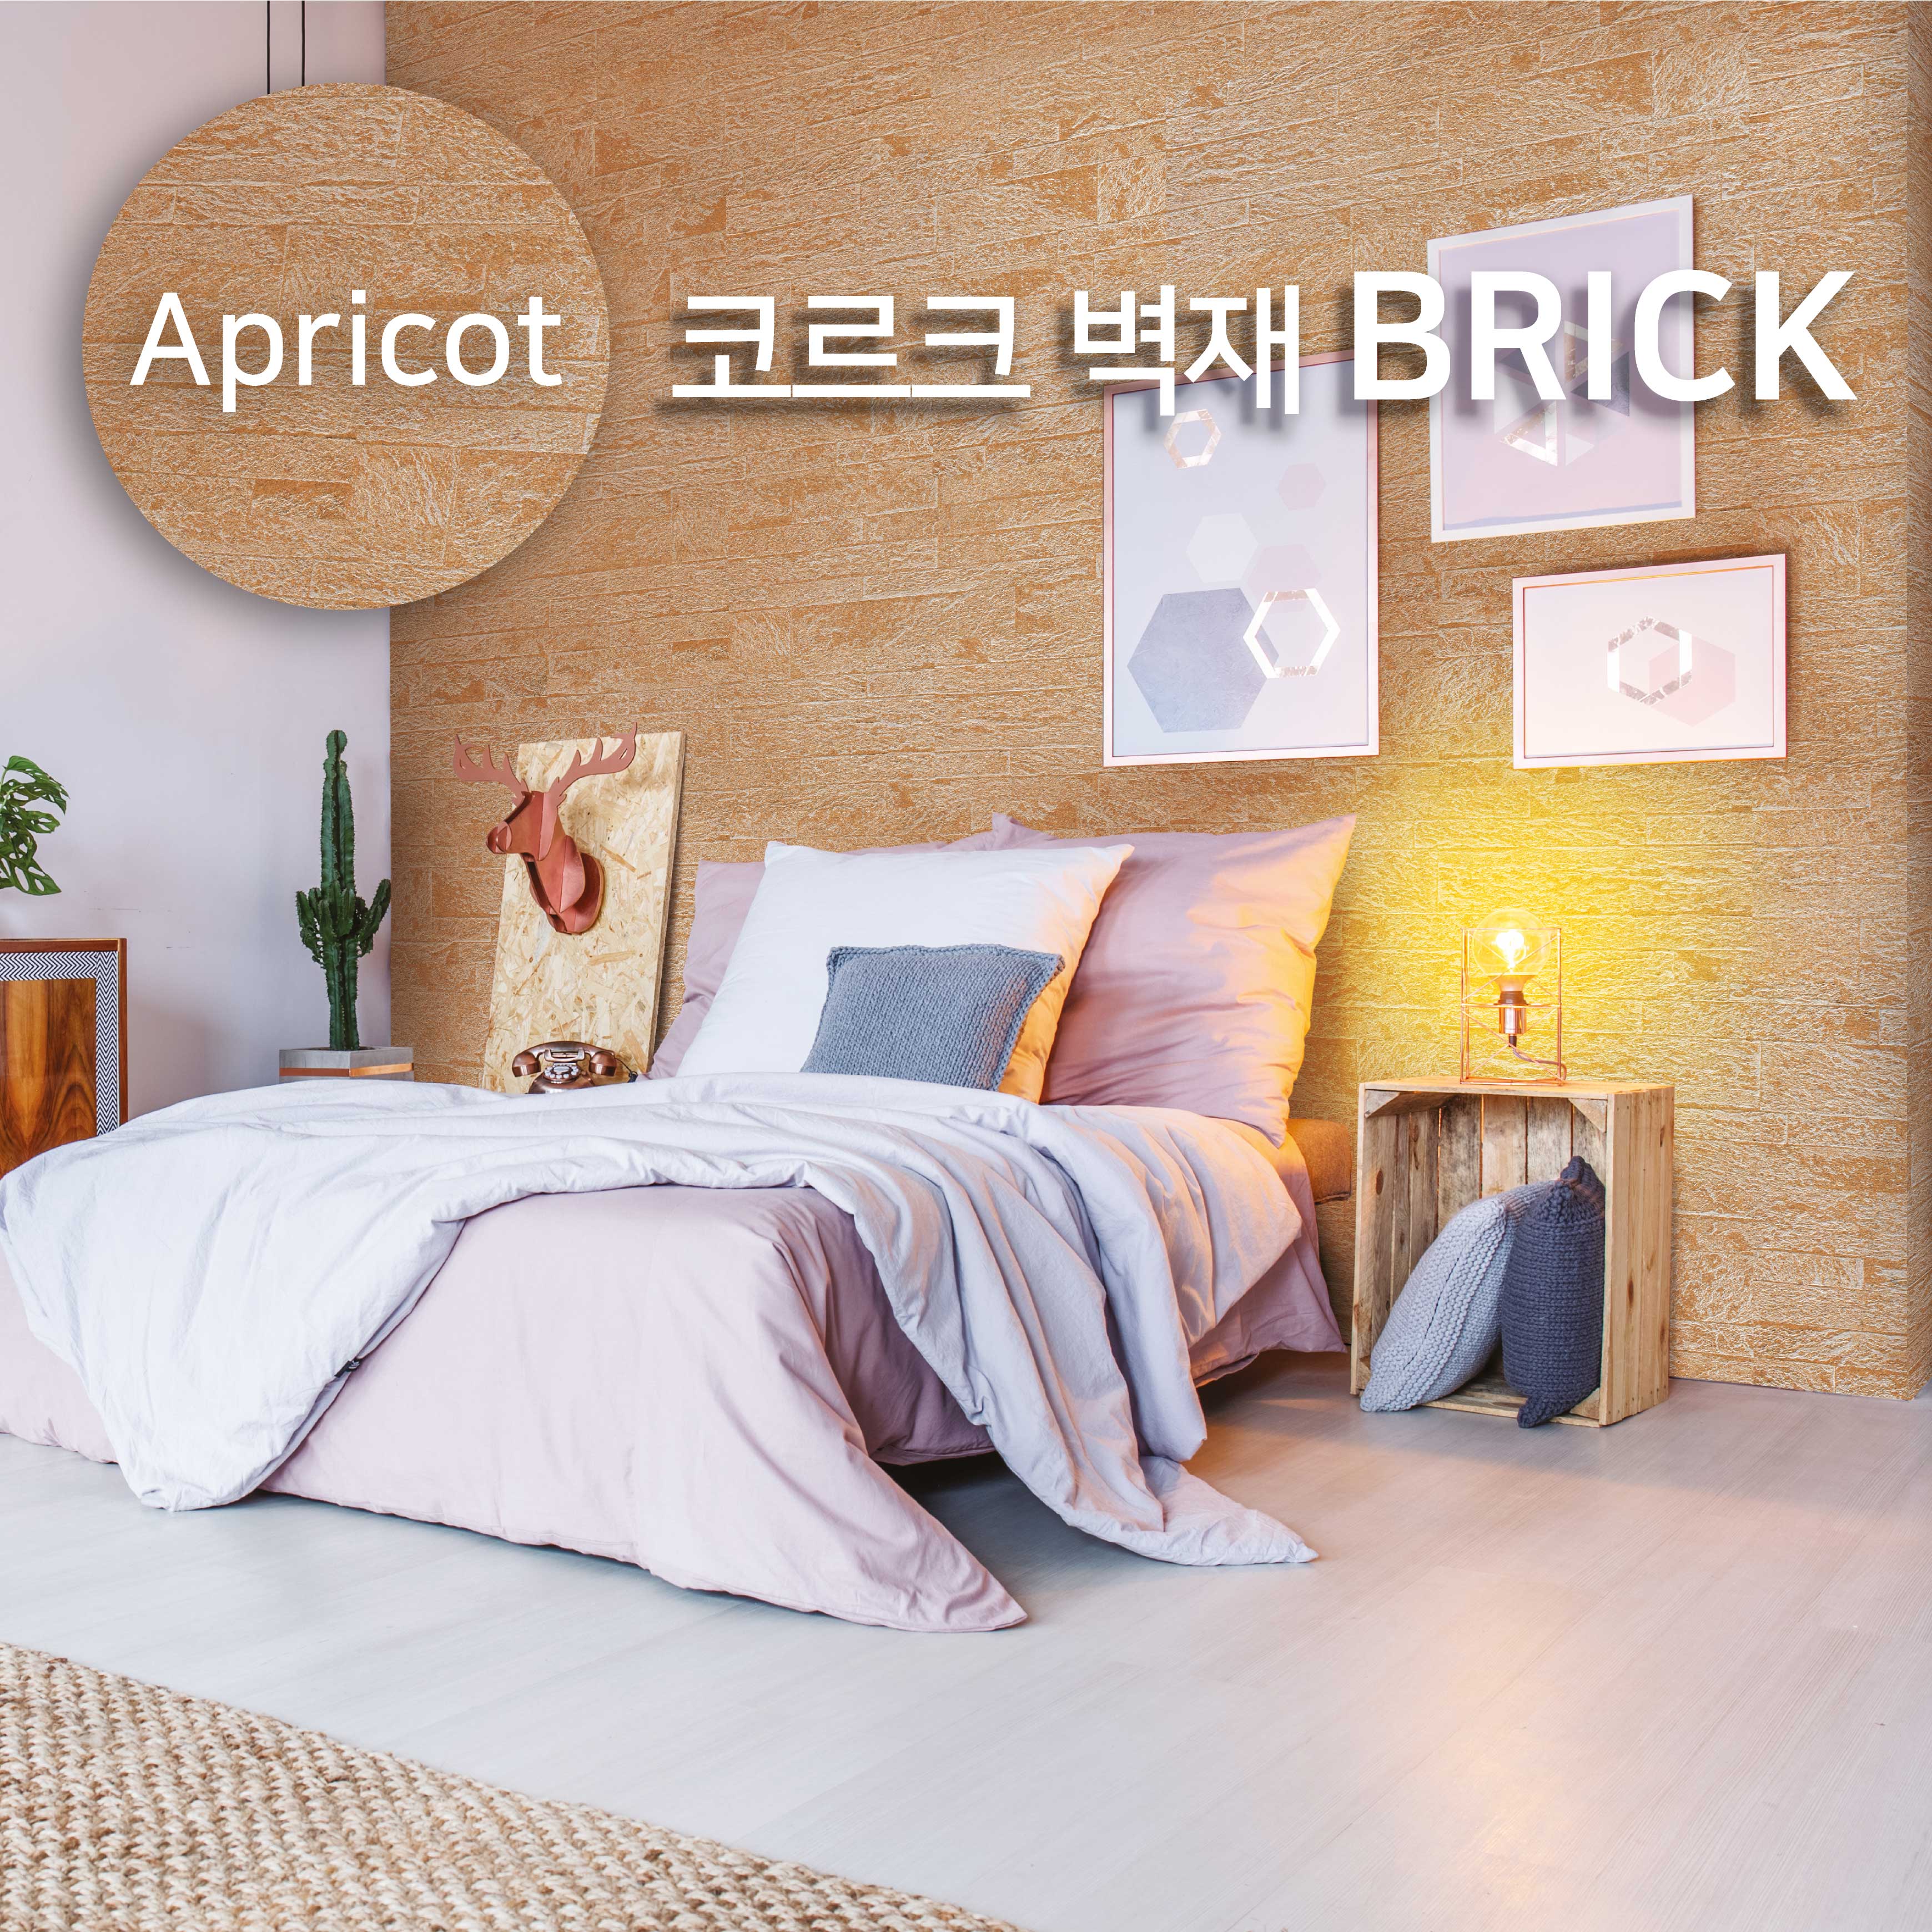 코르크 벽재 브릭 Apricot Brick / 1PACK (8장 = 2.16㎡)